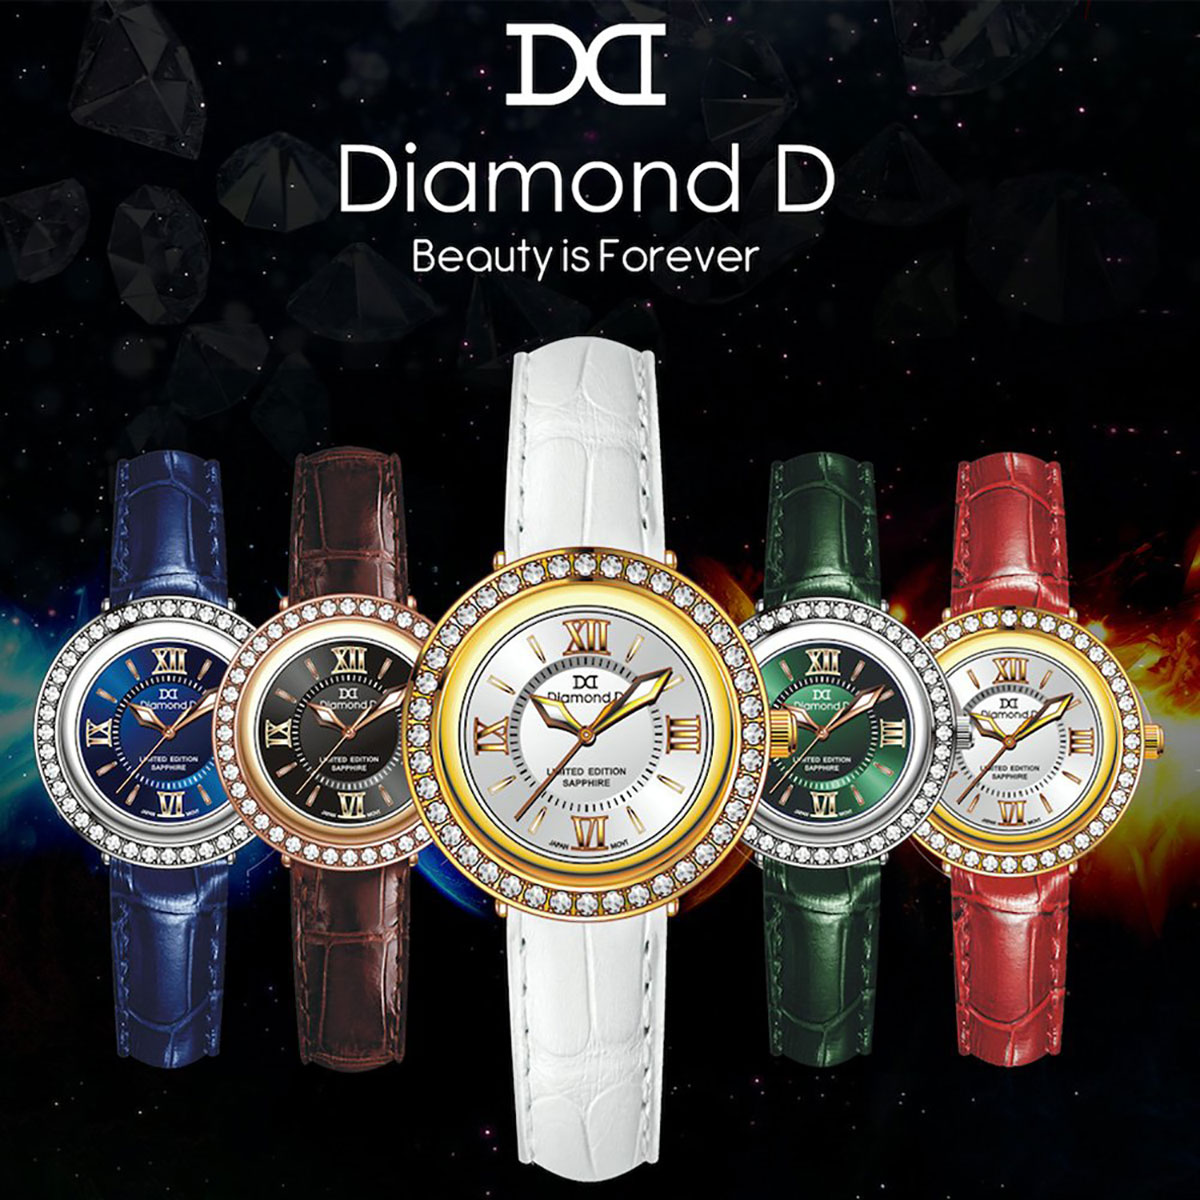 Bộ sưu tập đồng hồ Diamond D Ngũ Hành với 5 phiên bản Kim, Mộc, Thủy, Hỏa, Thổ hot nhất 2021